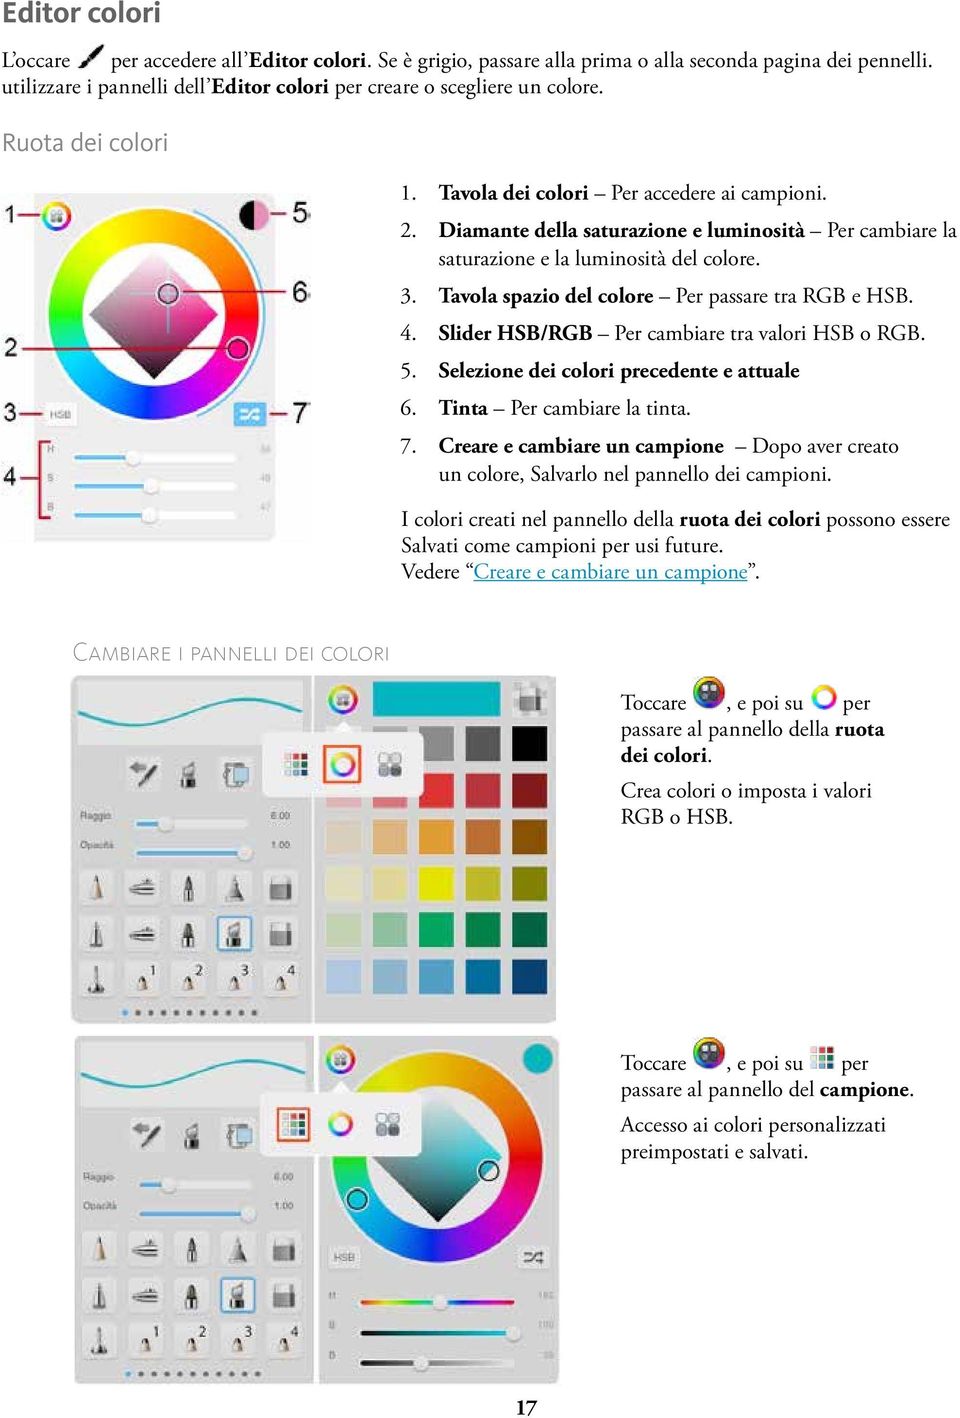 Tavola spazio del colore Per passare tra RGB e HSB. 4. Slider HSB/RGB Per cambiare tra valori HSB o RGB. 5. Selezione dei colori precedente e attuale 6. Tinta Per cambiare la tinta. 7.